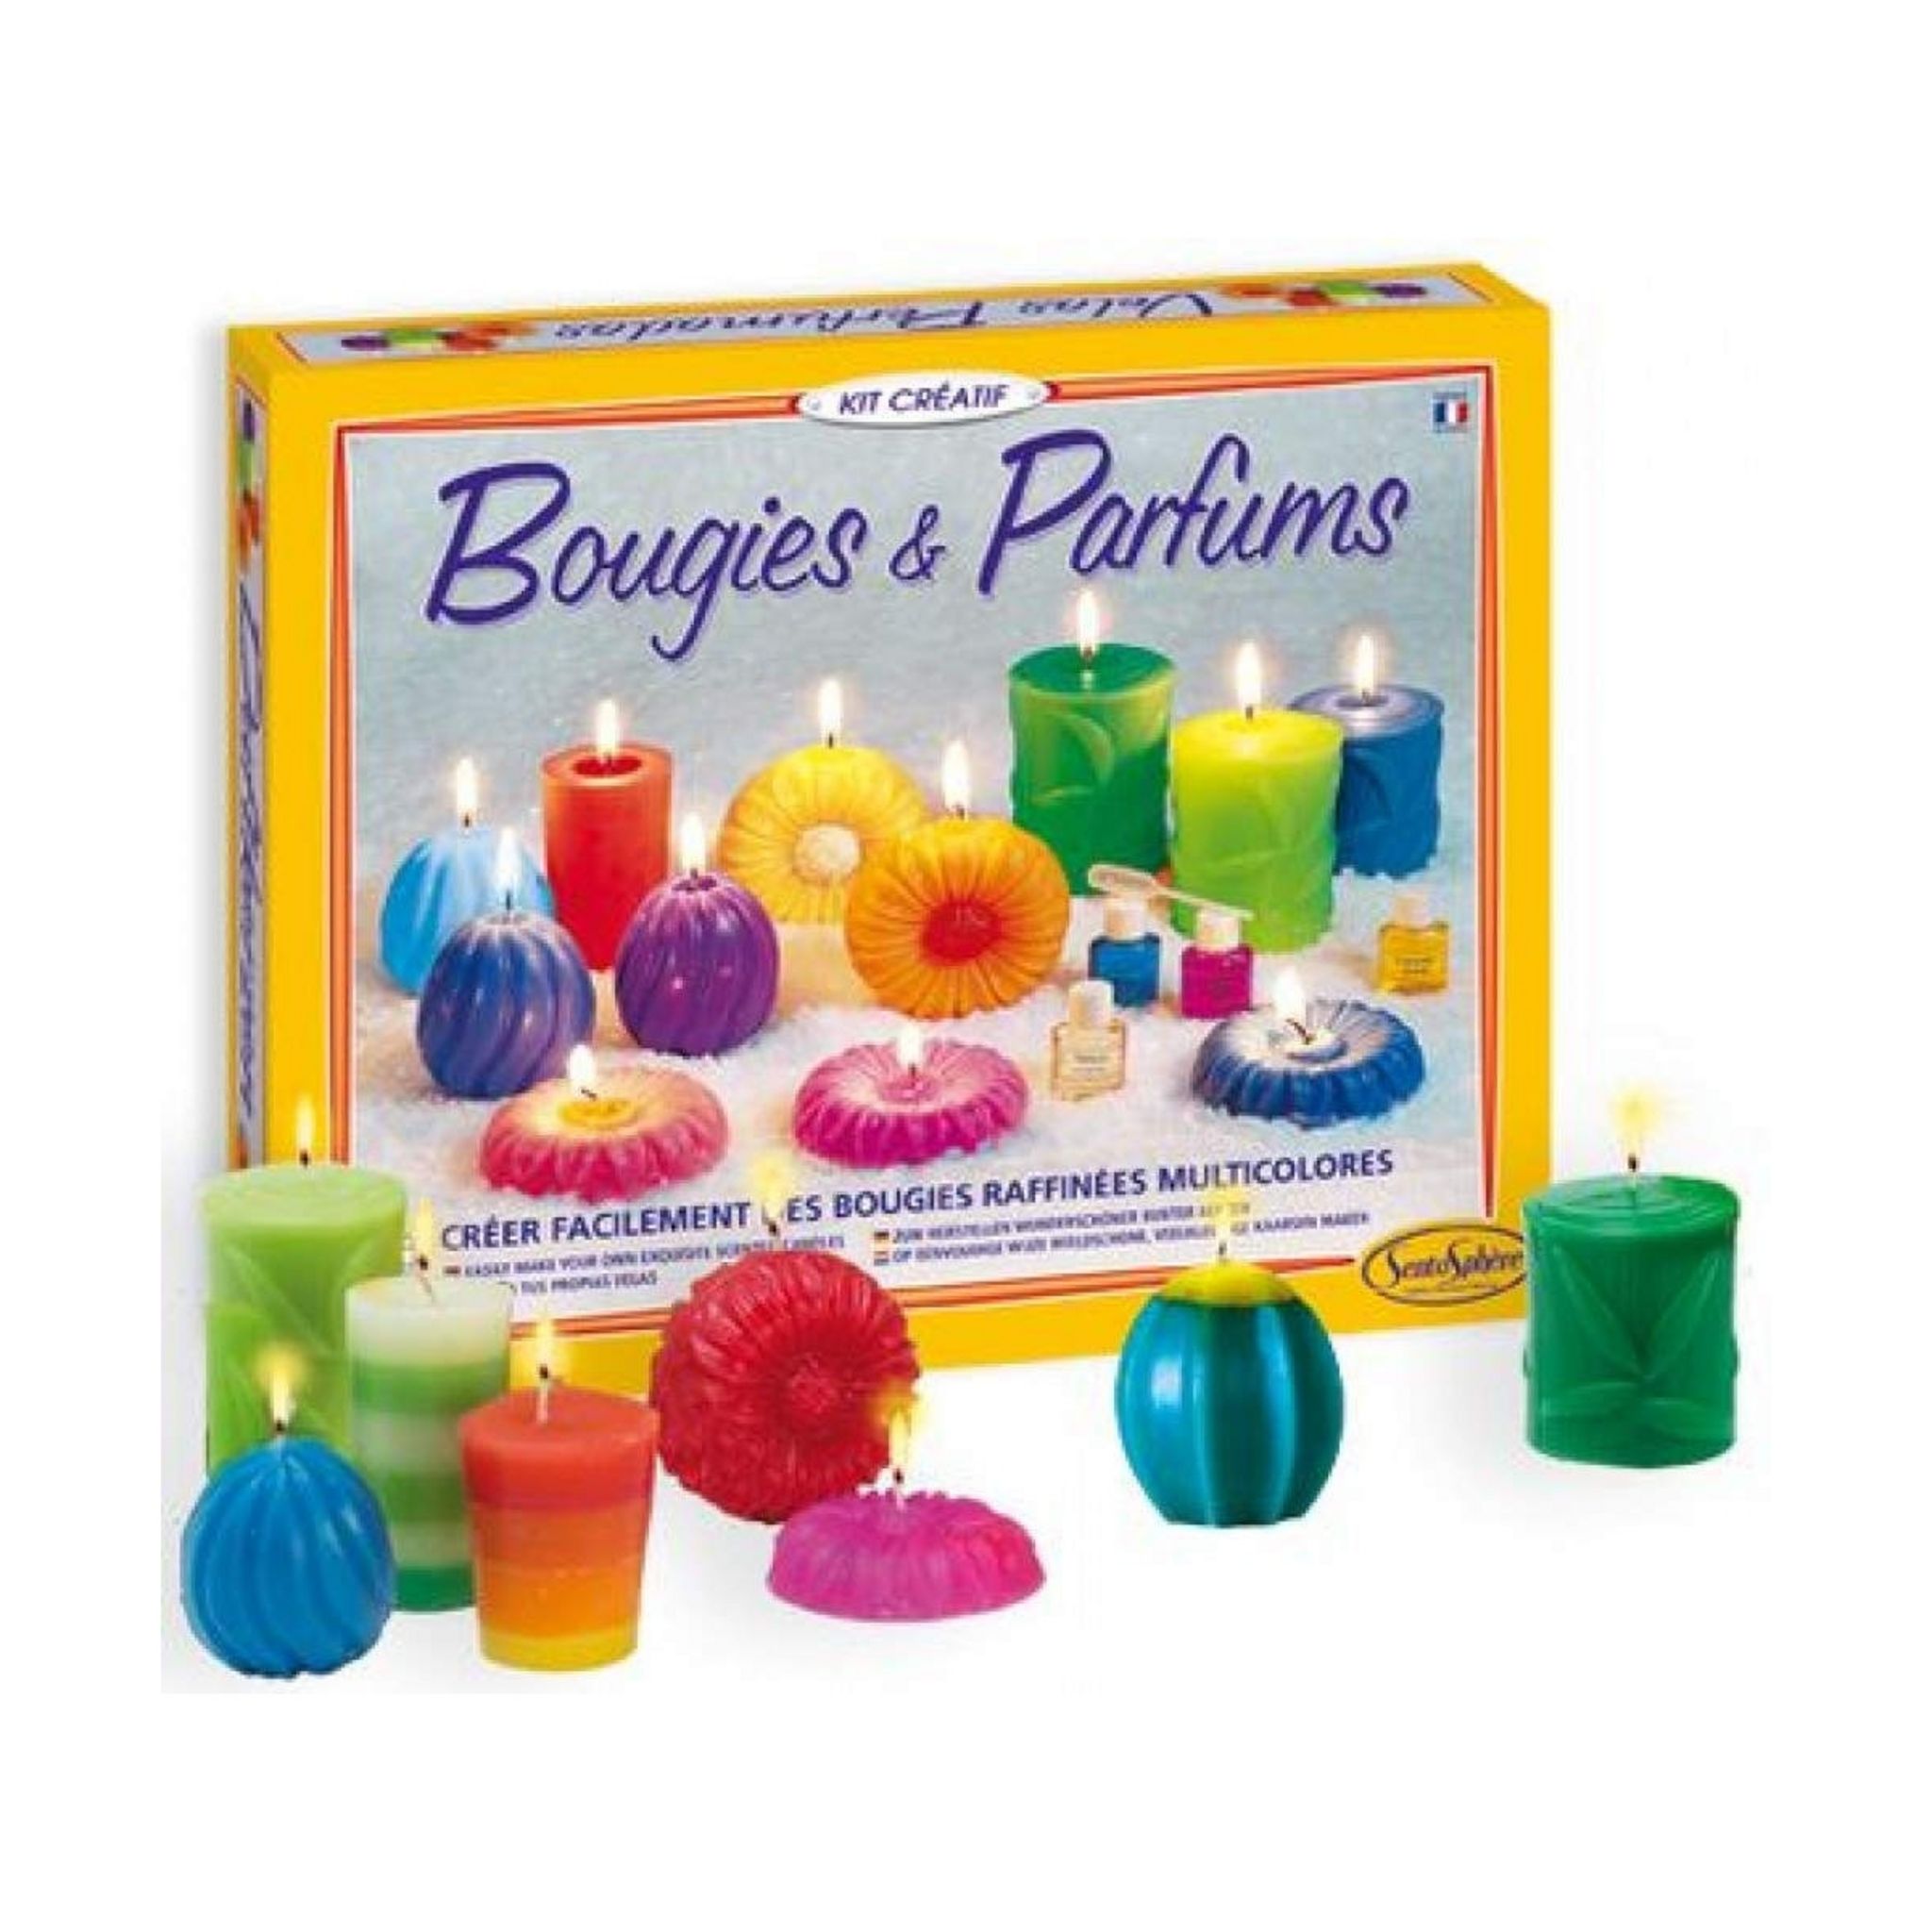 SentoSphère - BOUGIES CRISTAL - Création de bougies raffinées multicolores  - Kit atelier créatif enfant - A partir de 8 ans - Fabriqué en France 